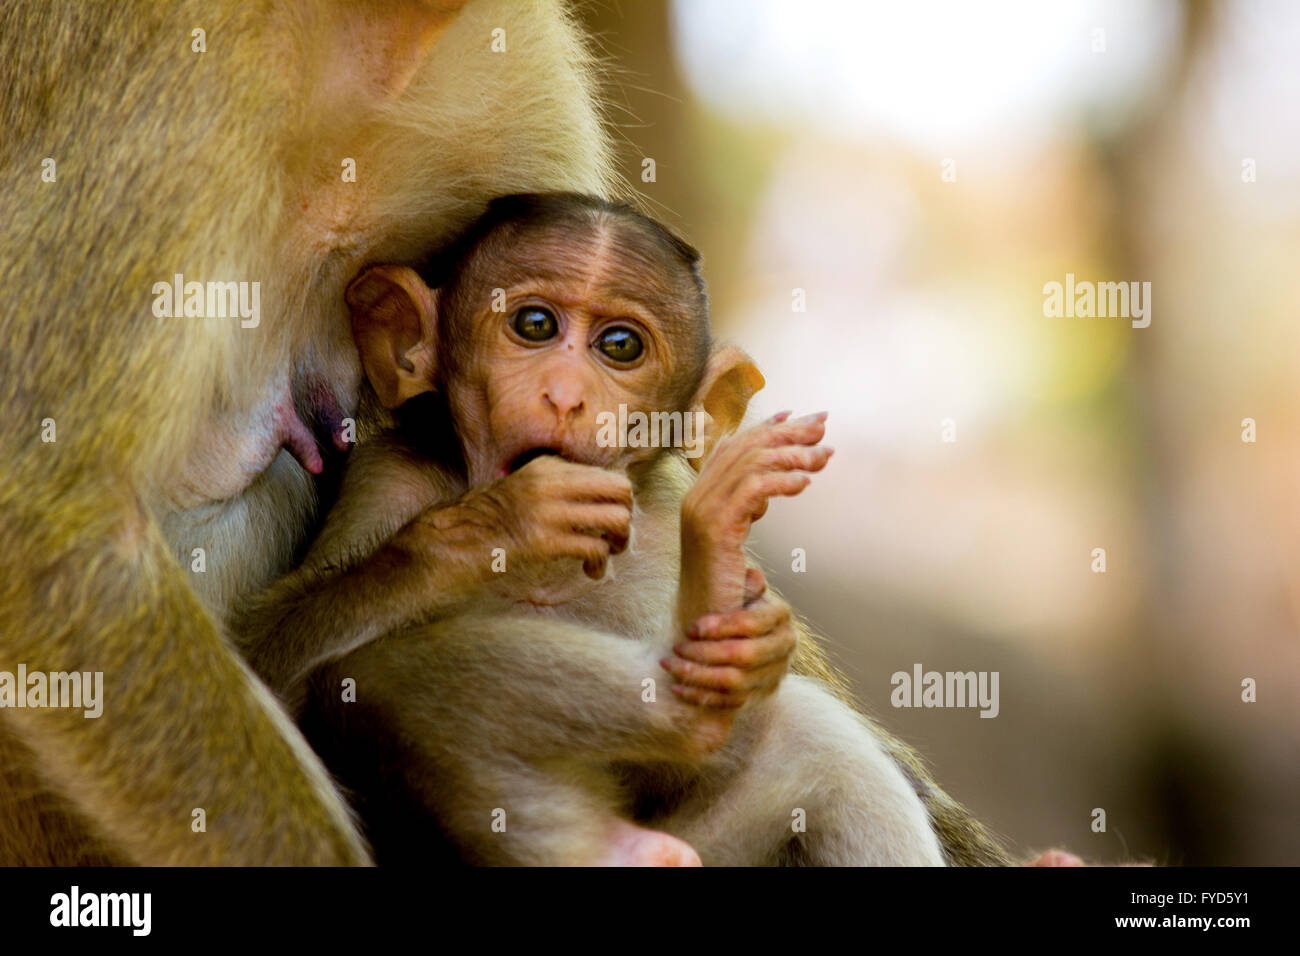 Baby Affe im Arm der Mutter Affe Stockfoto